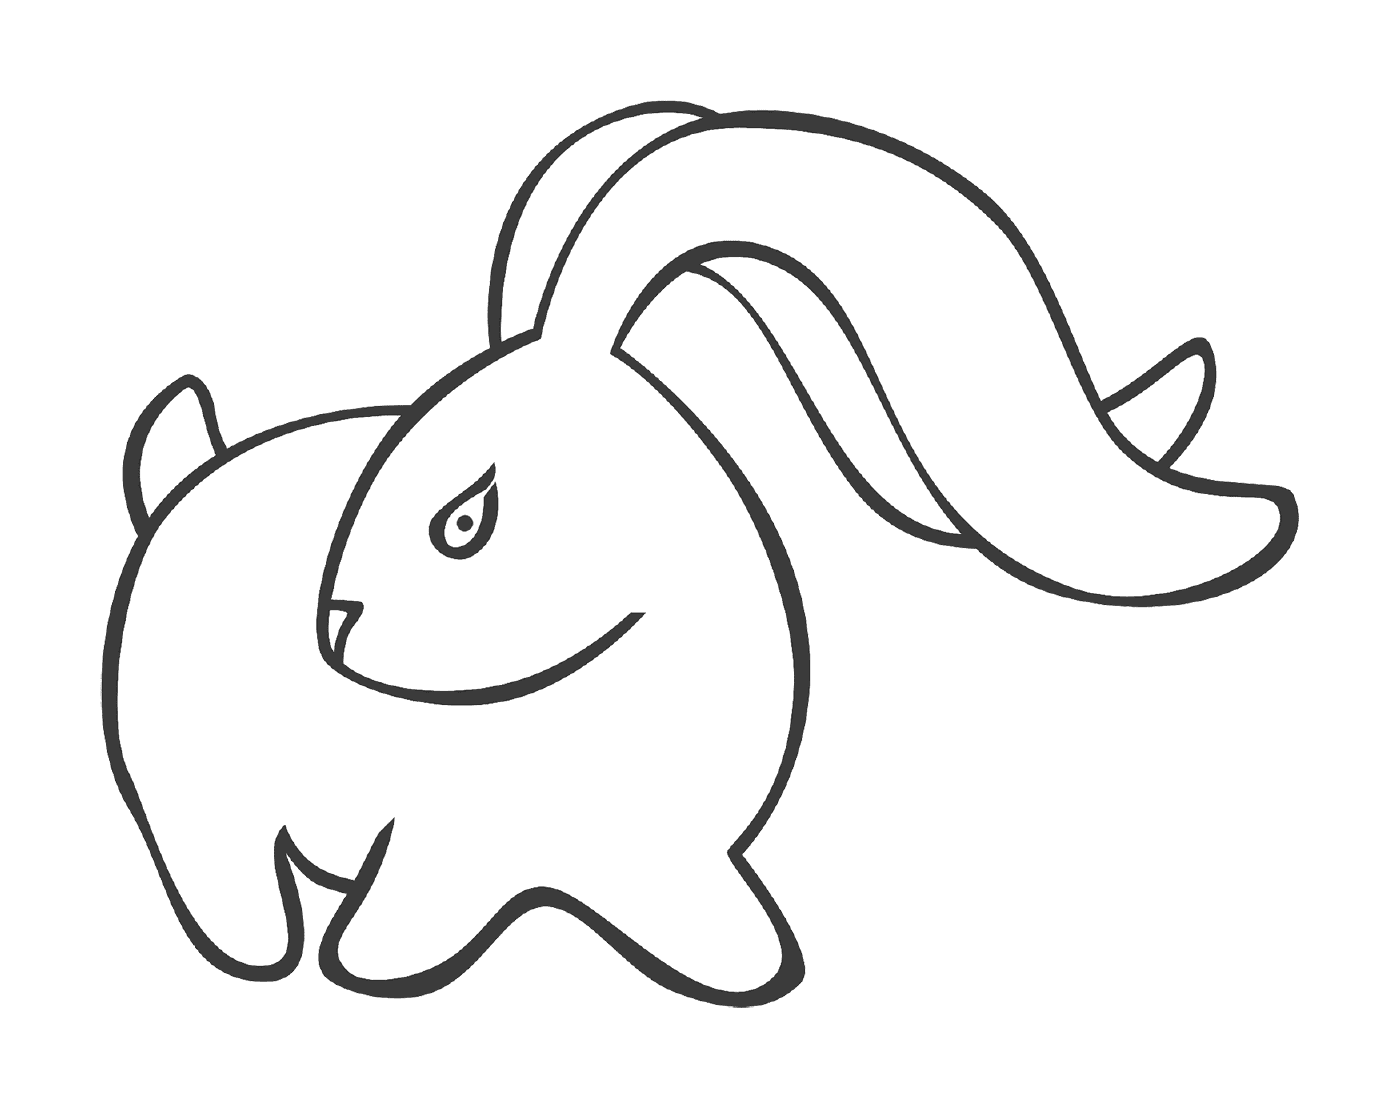  Coniglio con lunghe orecchie stilizzate 